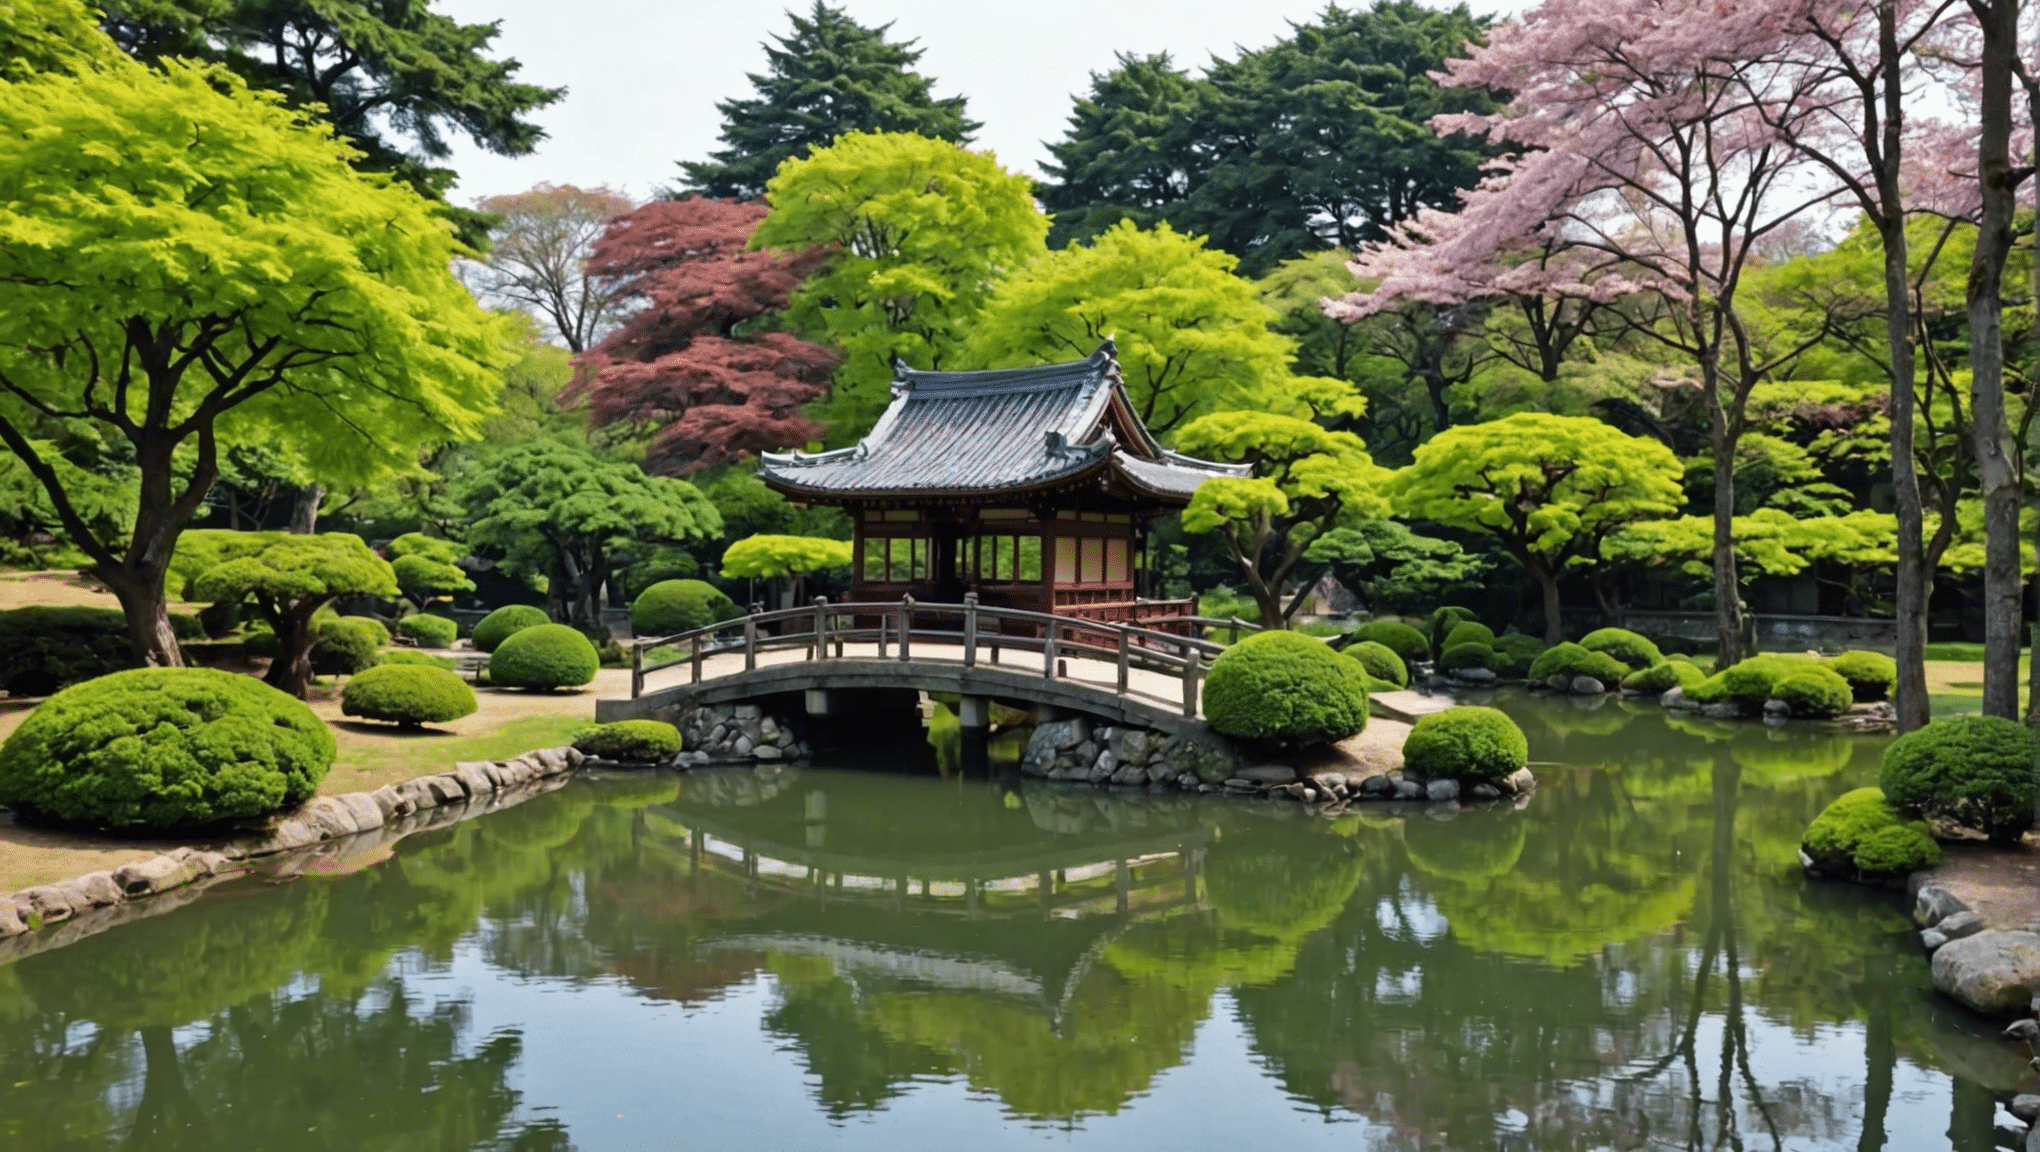 découvrez un havre de paix au cœur de paris avec le magnifique jardin japonais, un lieu emblématique de la capitale française où la sérénité et la beauté se rencontrent harmonieusement.